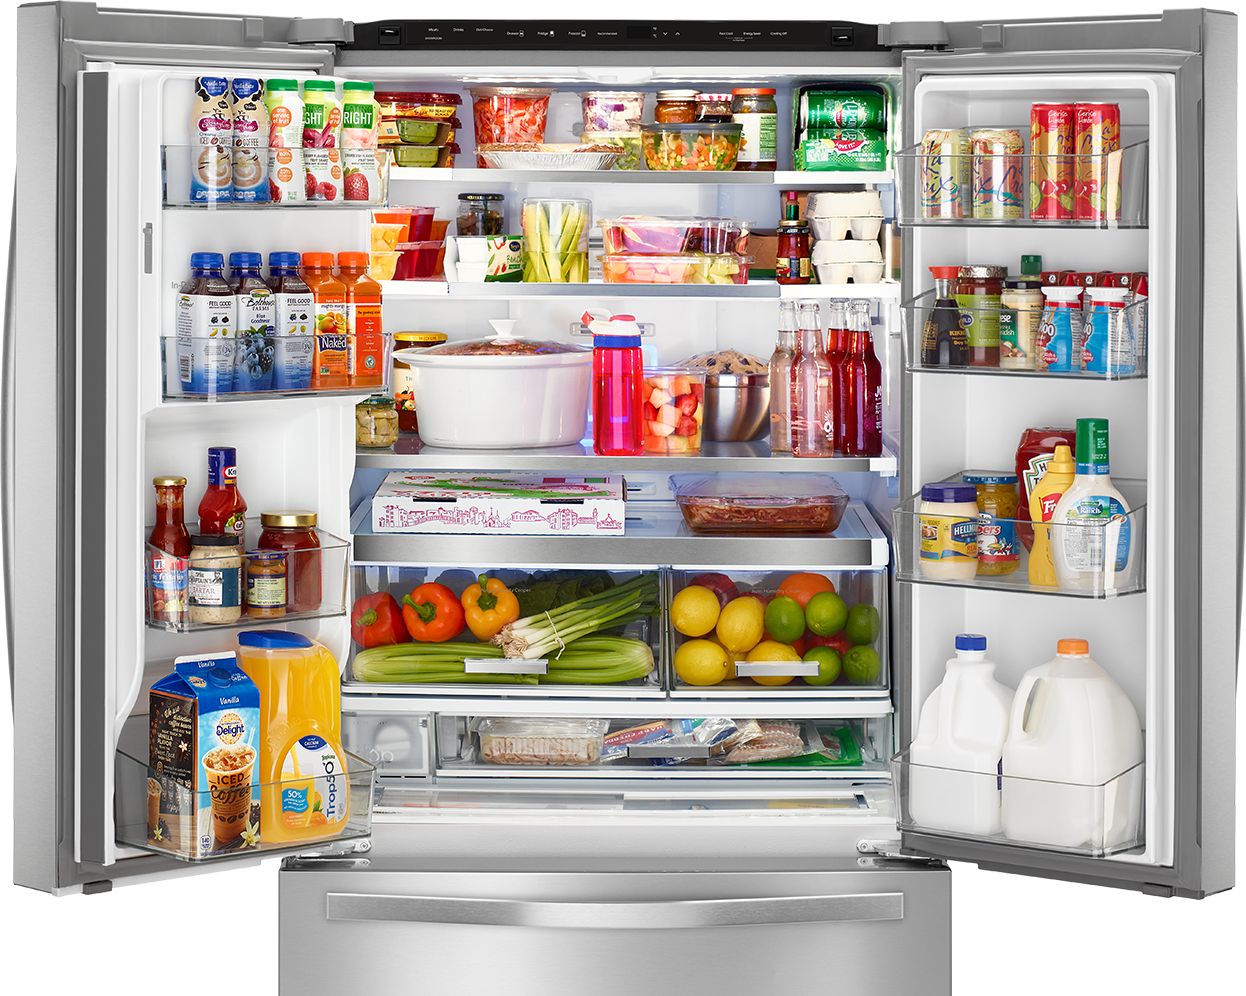 Μην βάζετε ποτέ αυτές τις τροφές στο επάνω ράφι του ψυγείου – Δείτε τι κίνδυνος υπάρχει